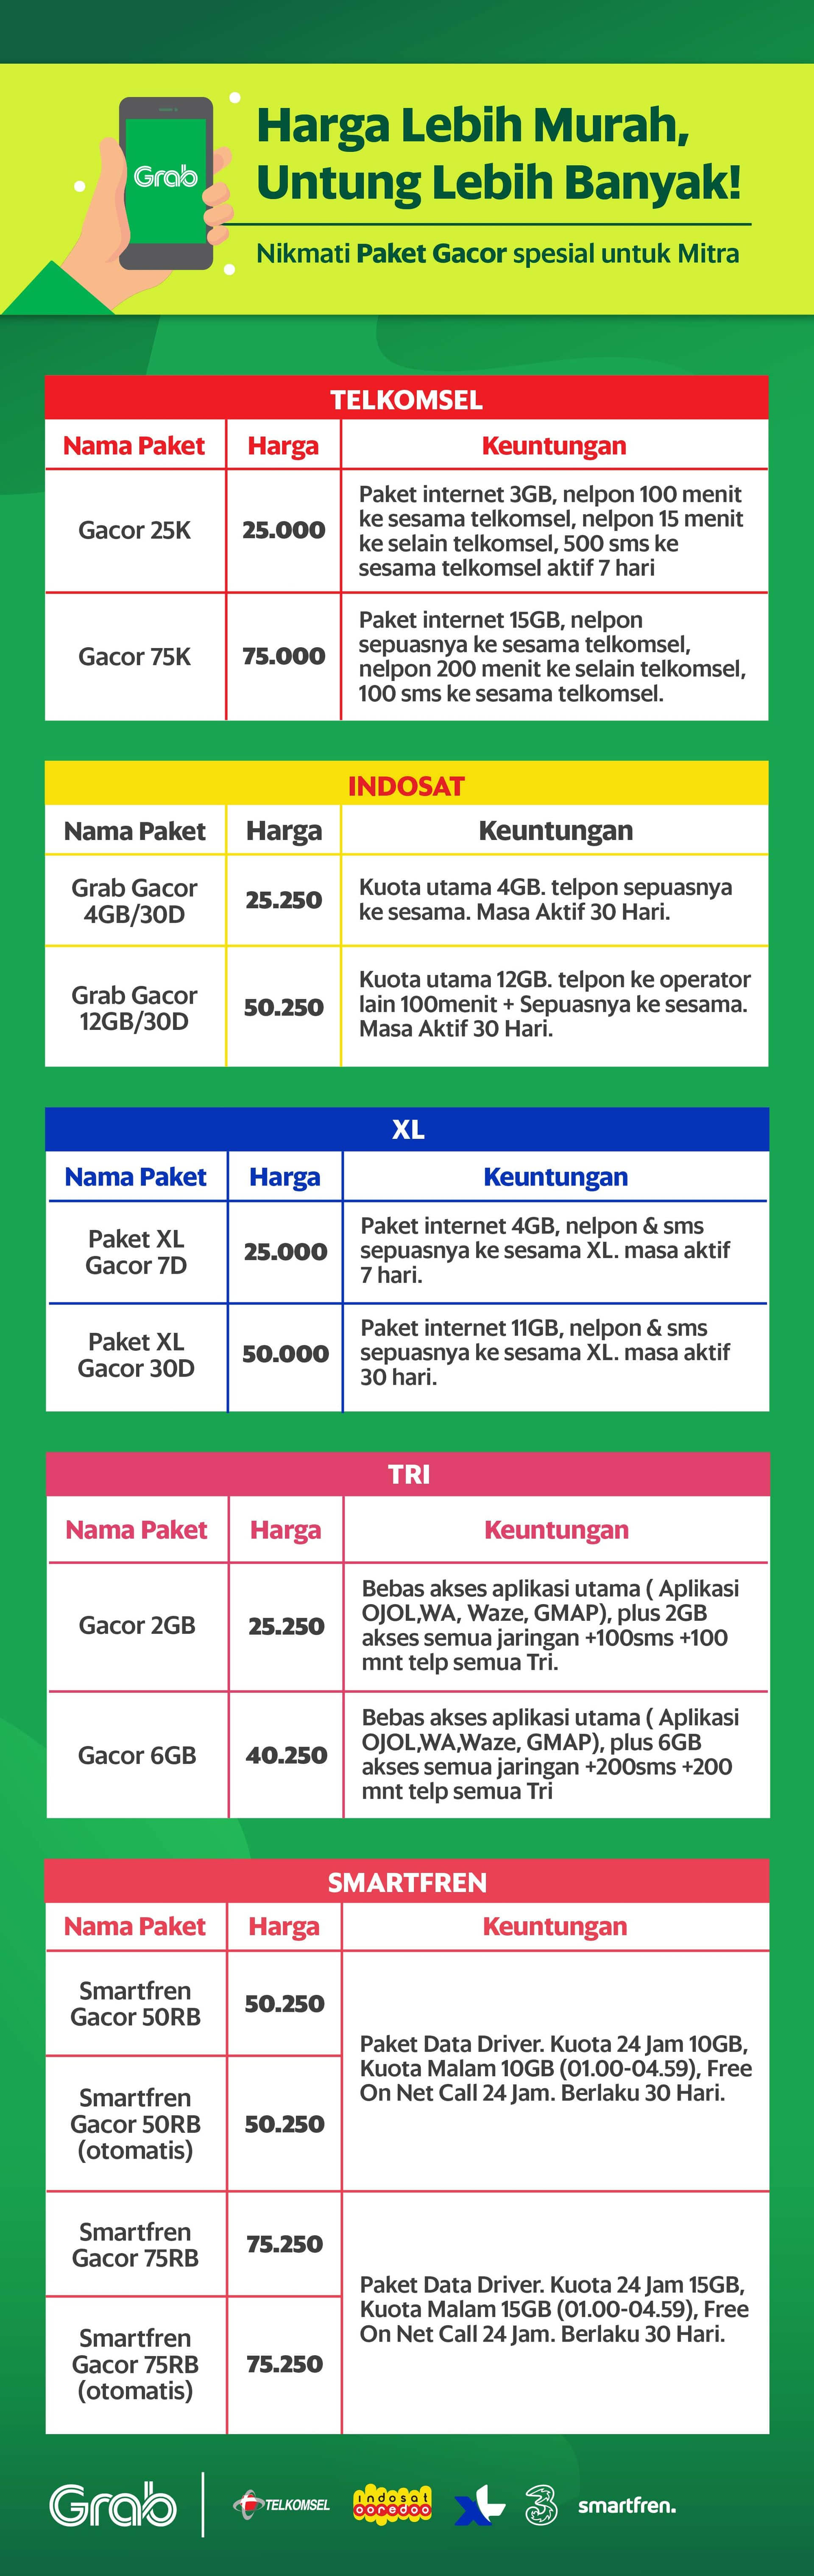 Grab Indonesia Harga Khusus Beli Paket Gacor Untuk Mitra Lebih Hemat Dan Banyak Kuotanya Grab Id